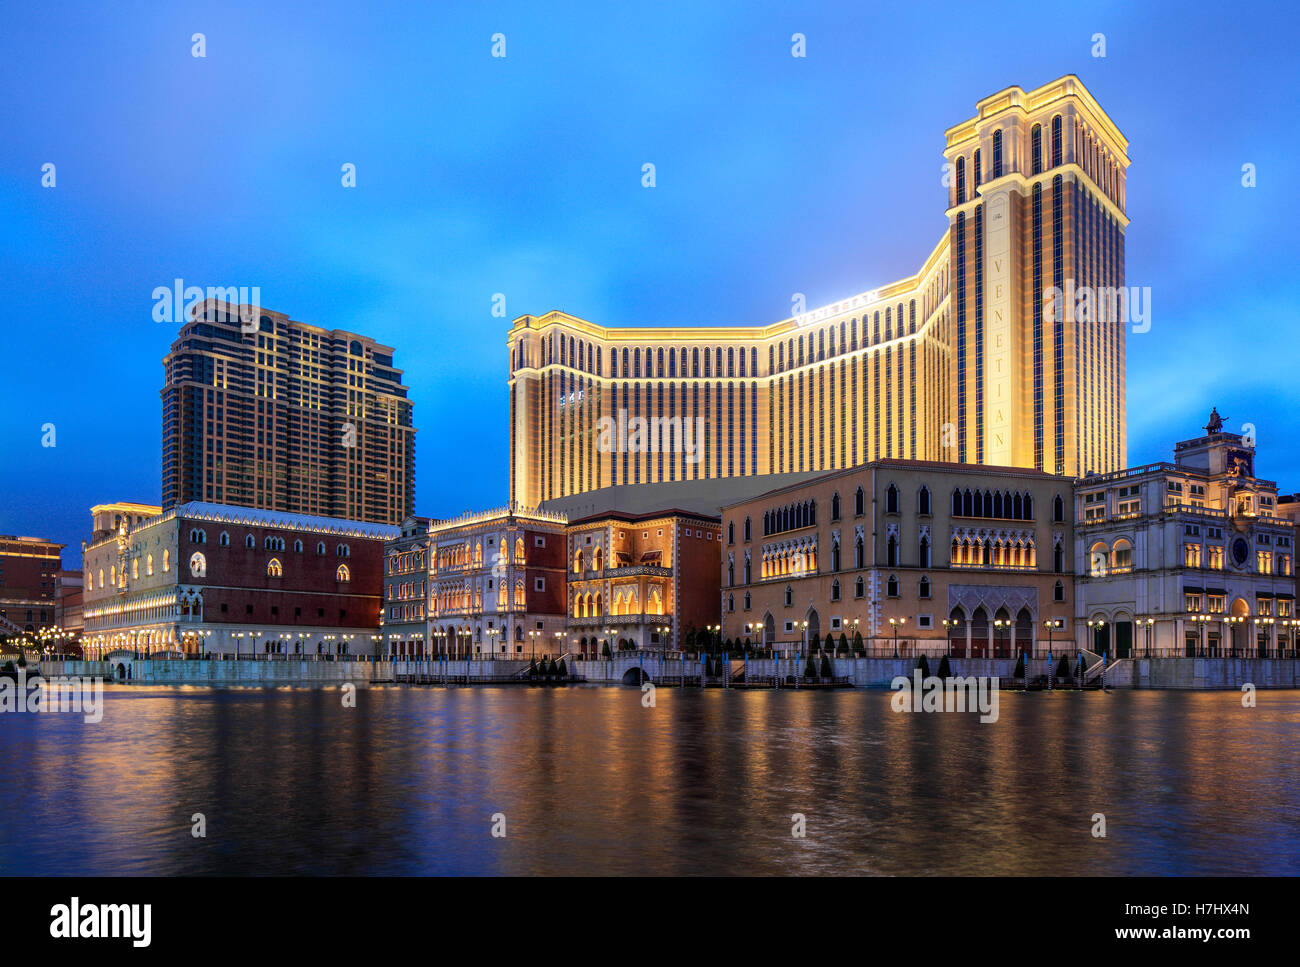 Das Venetian Hotel and Casino in Cotai, Macao. Stockfoto